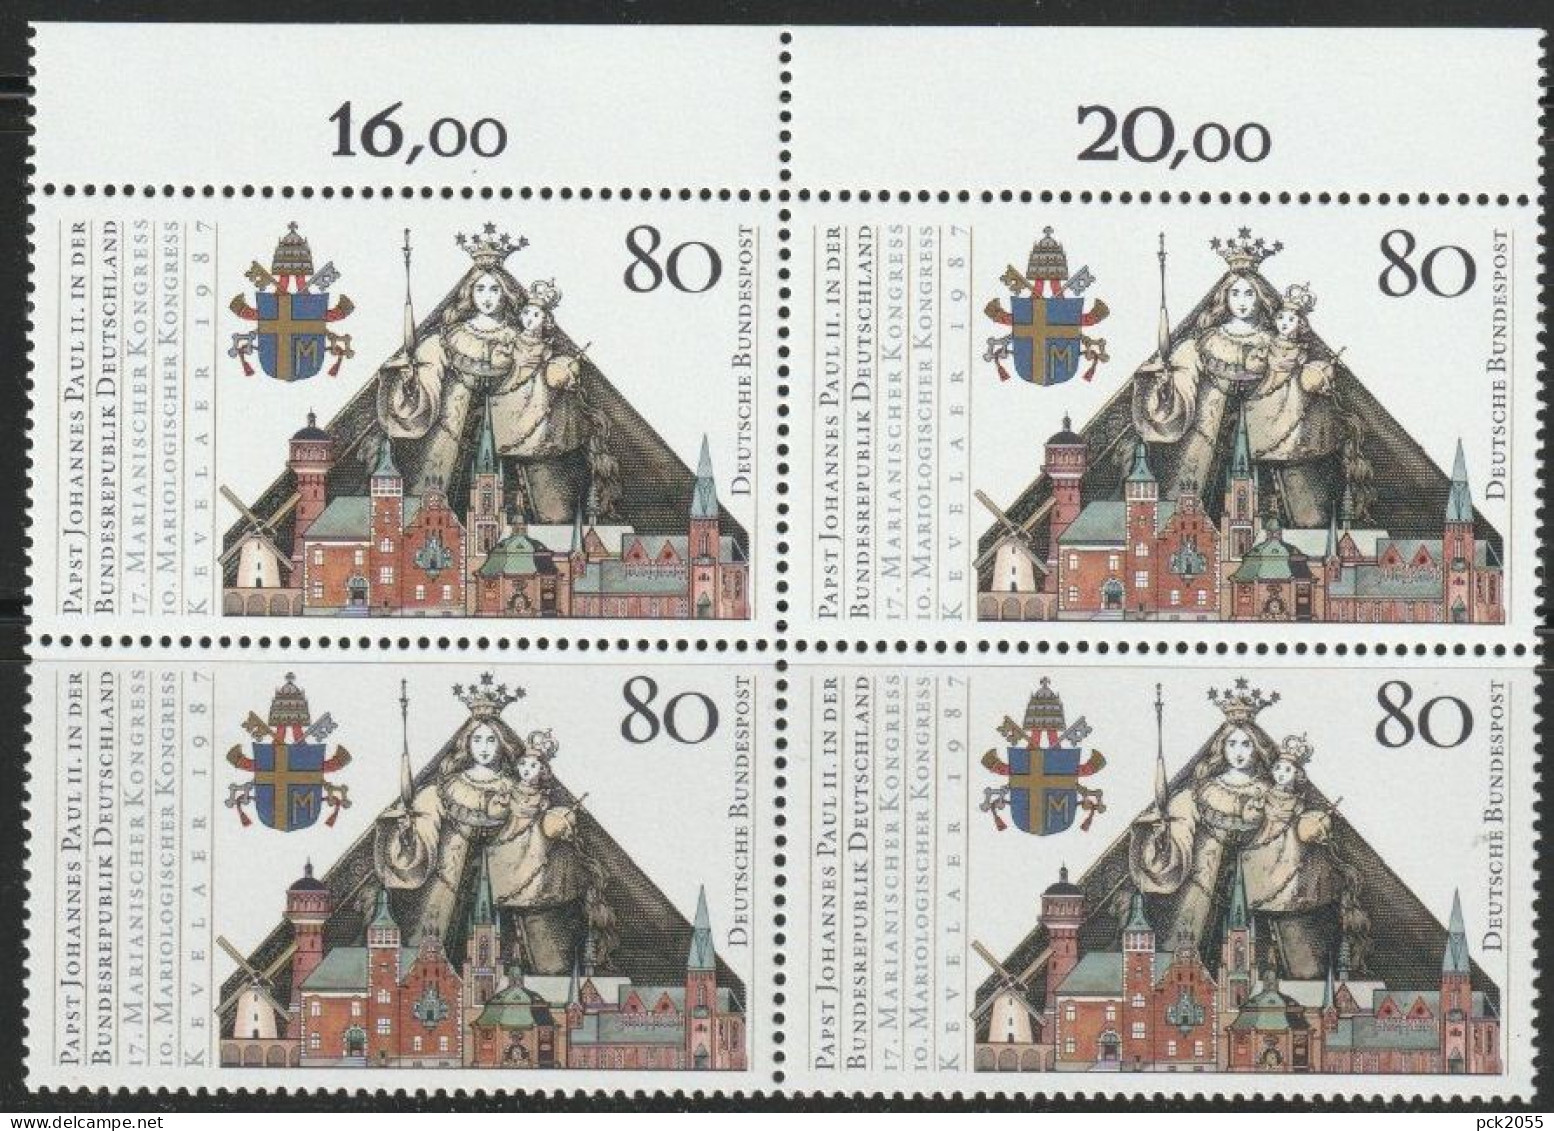 BRD 1987 MiNr.1320 4er Block ** Postfrisch Besuch Papst Johannes Paul II  ( 456 )günstige Versandkosten - Nuevos